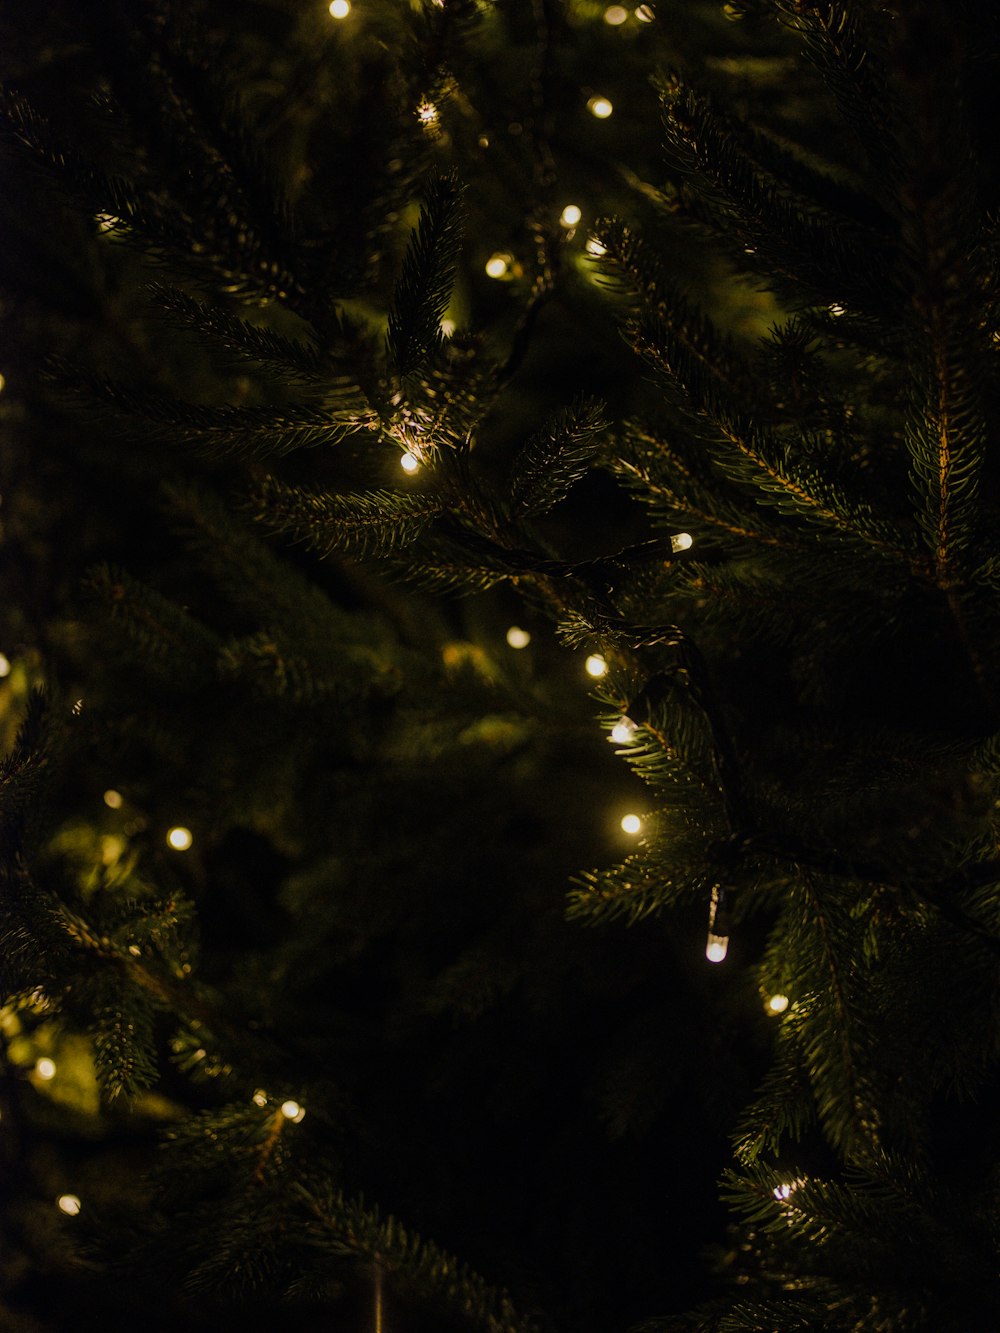 luci a stringa di Natale illuminate